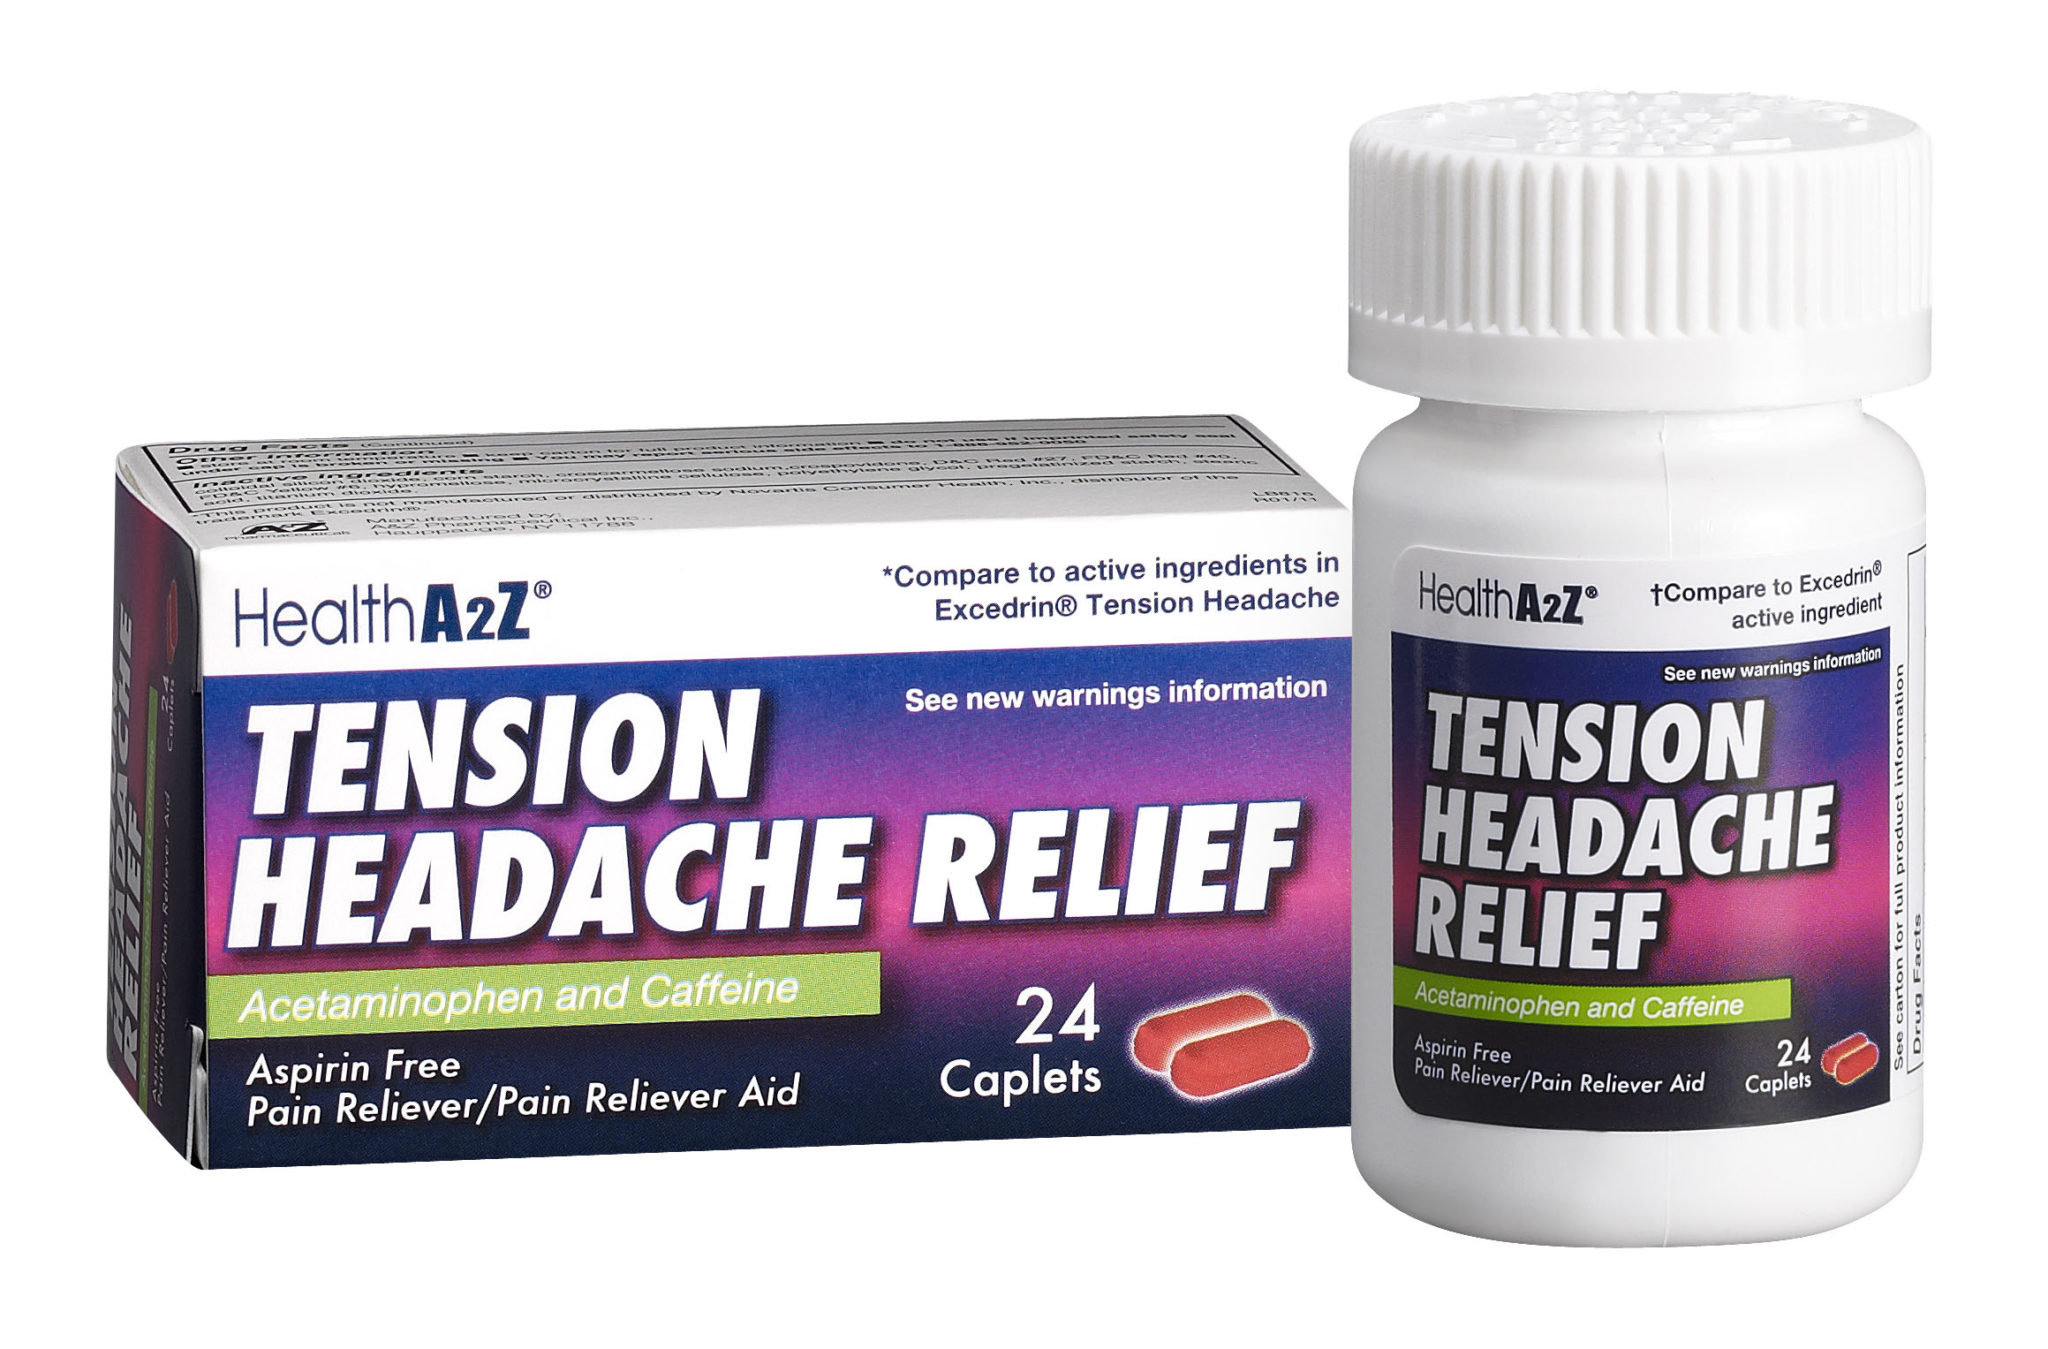 HealthA2Z Tension Headache Relief